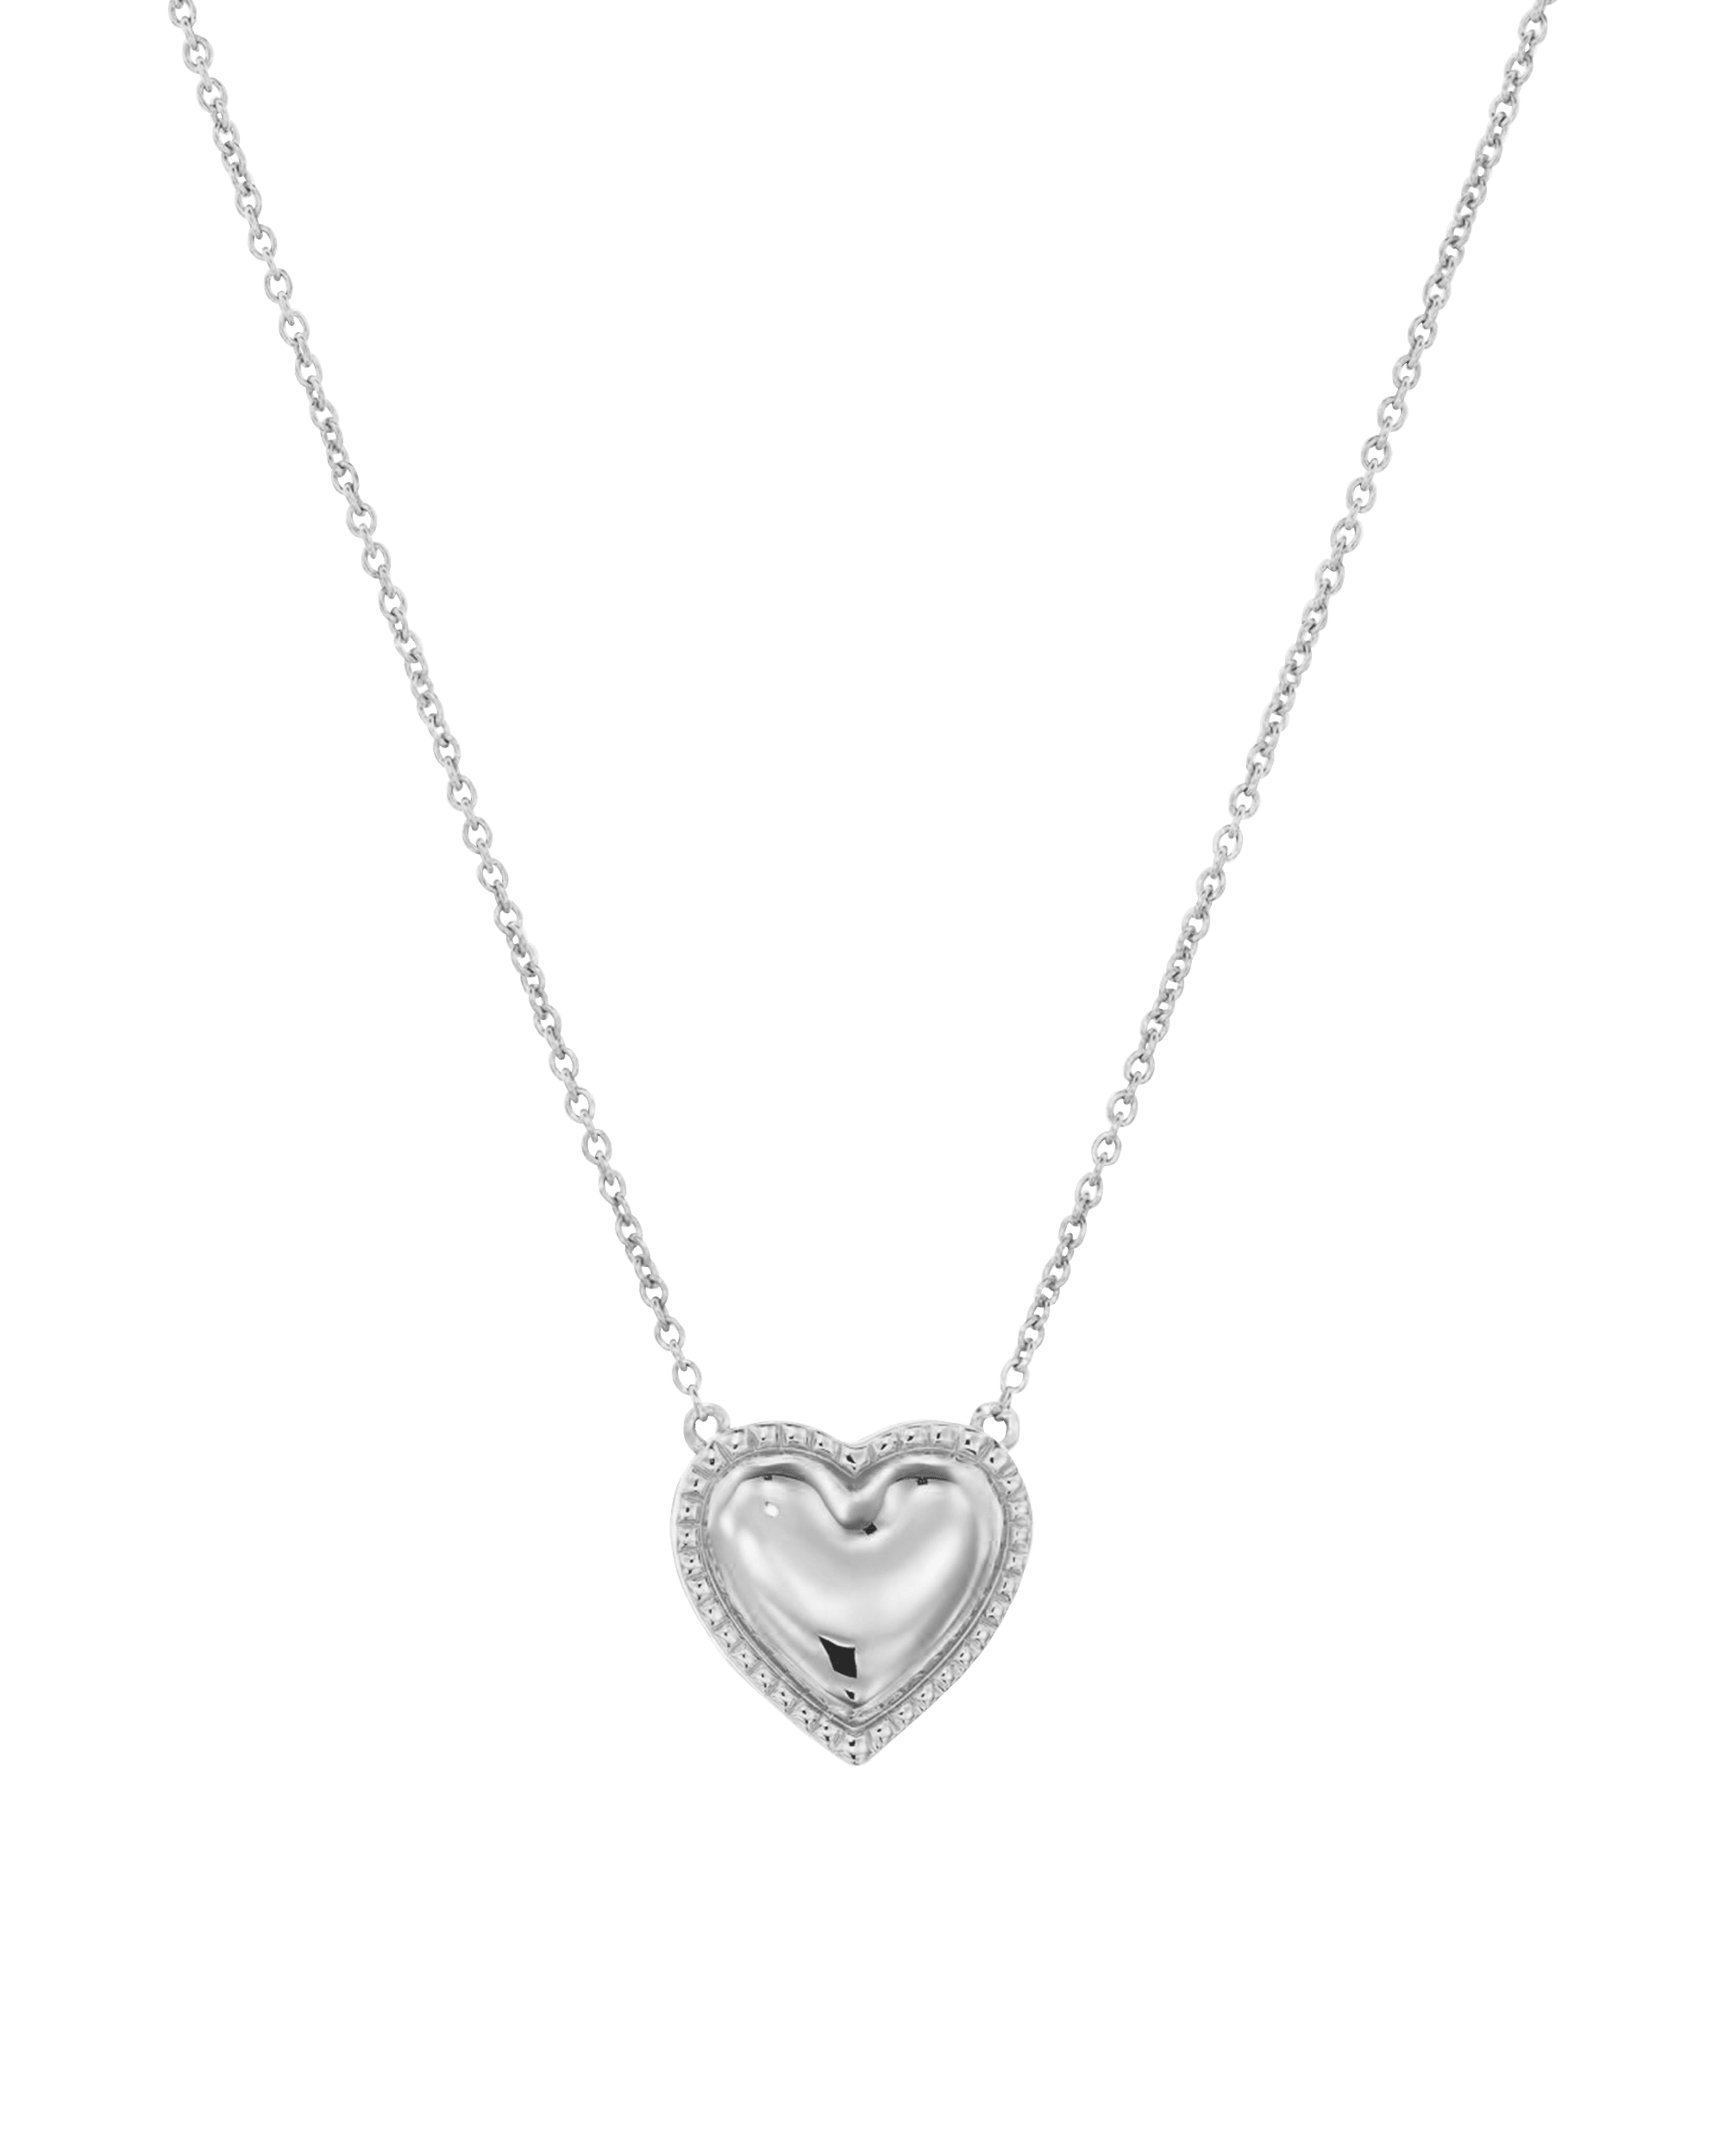 Heart Pendant Necklace - 18K Gold Vermeil Necklaces magal-dev 